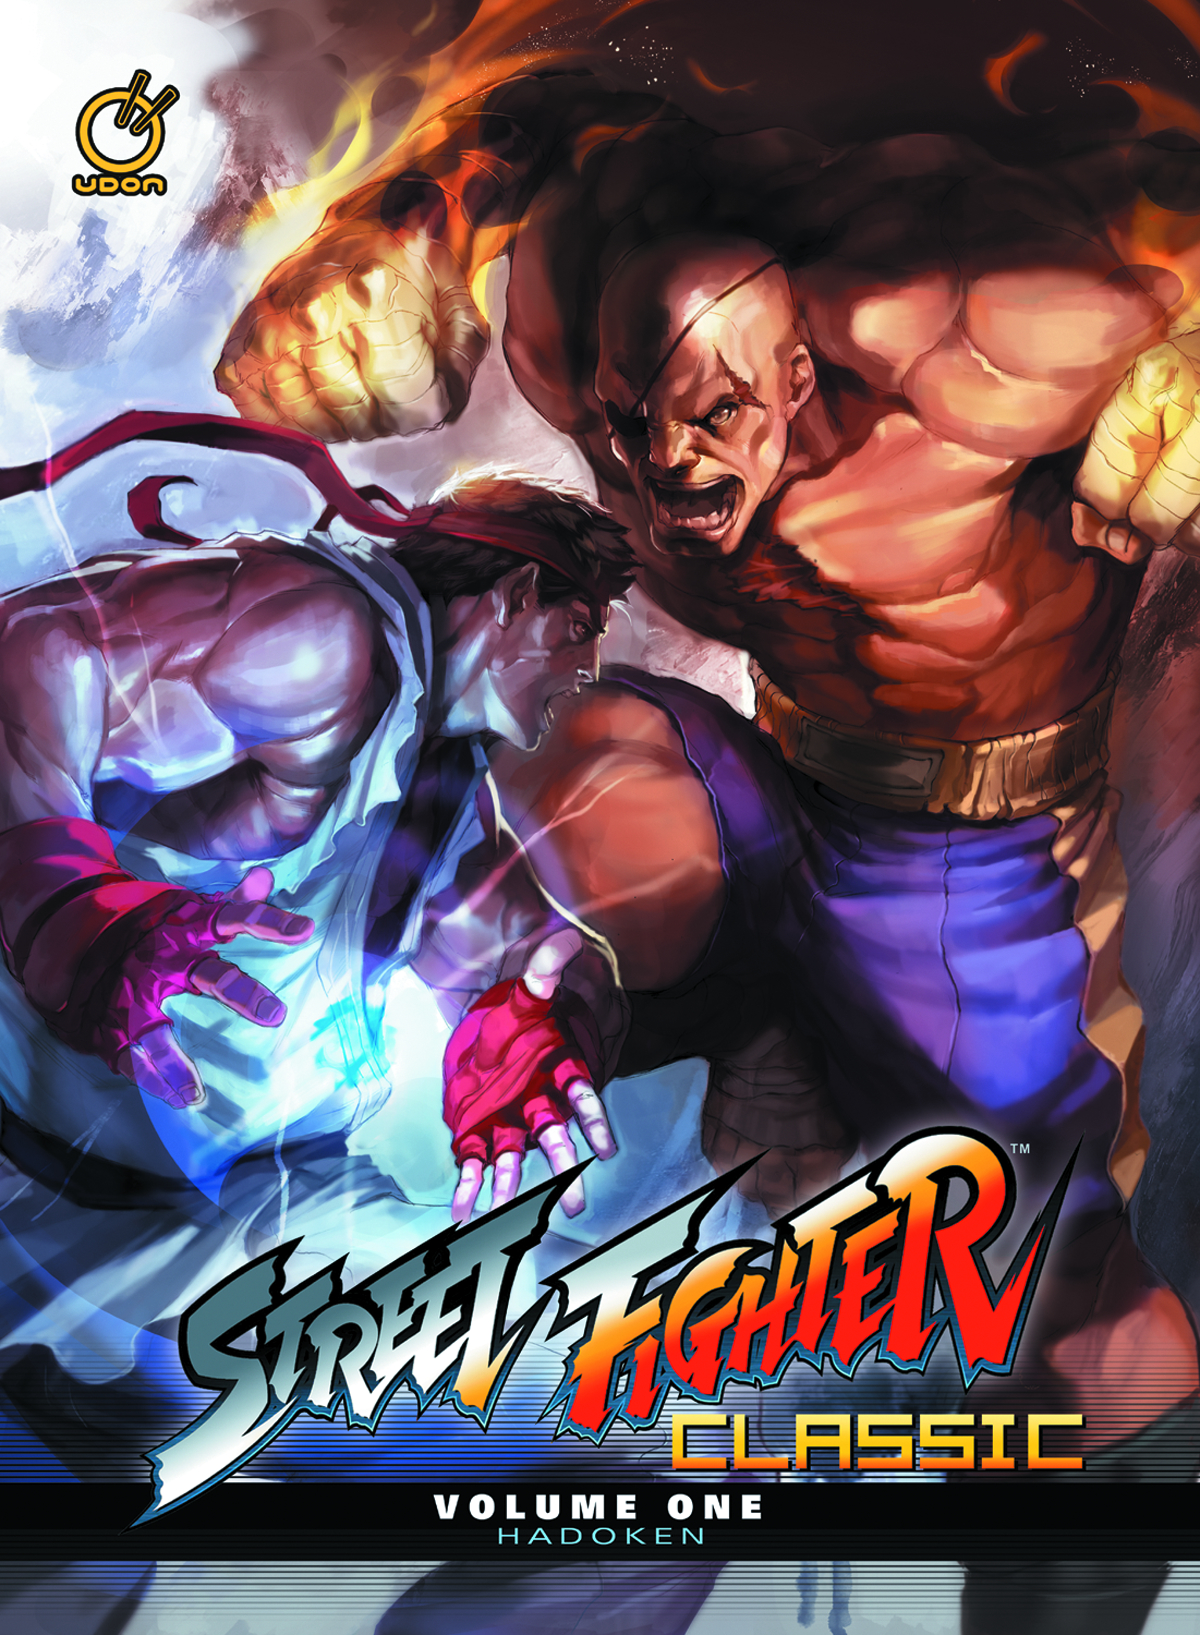 Street Fighter Classic Hardcover Volume 1 Hadoken